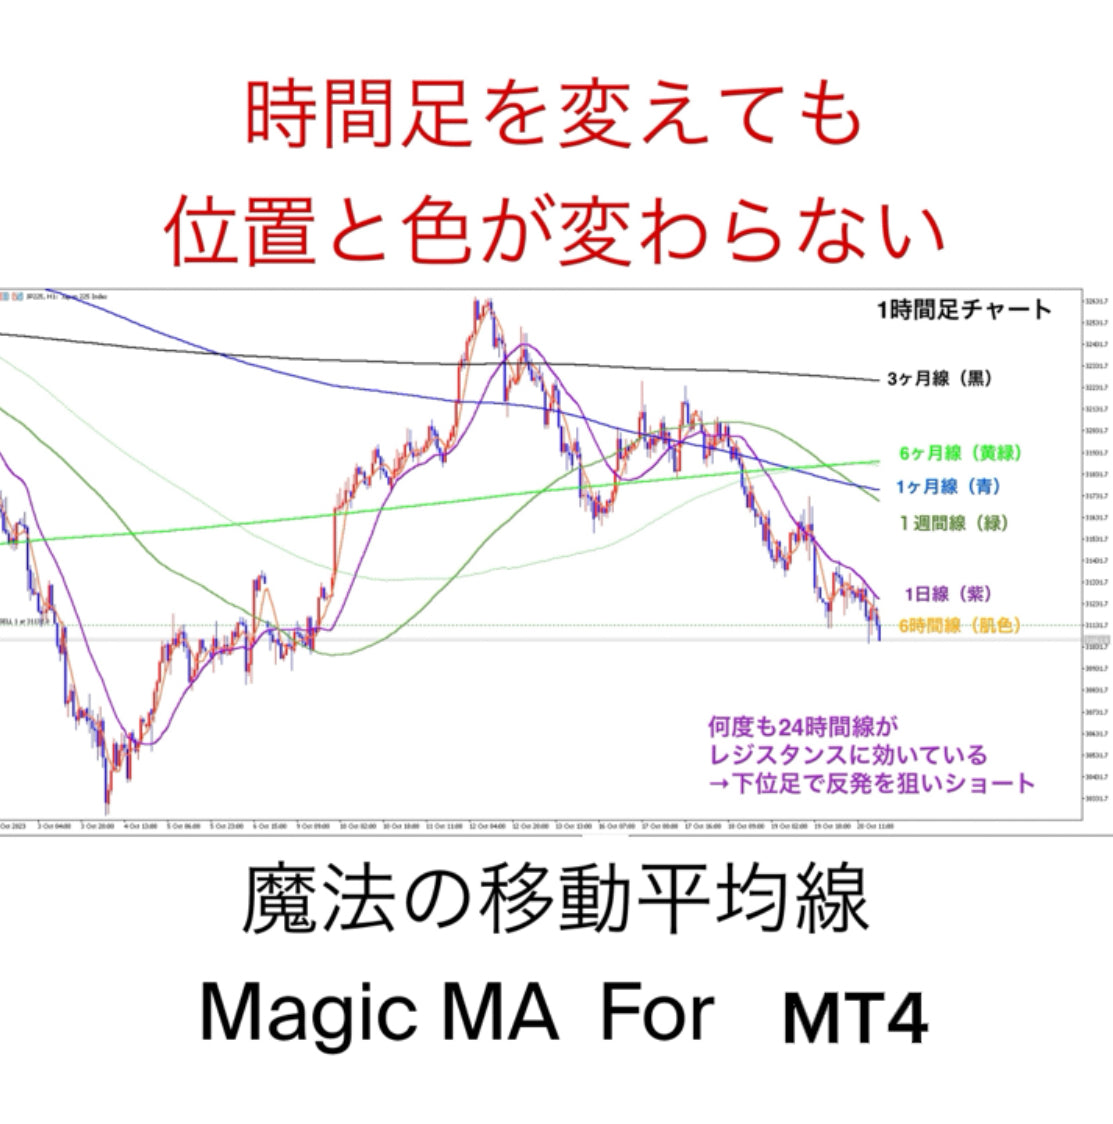 非サブスク 新発売記念期間限定特価【For MT4①】Magic MA by TimeDimenSion（TimeDimenSion SwitchのMAだけをMT4に表示できます）